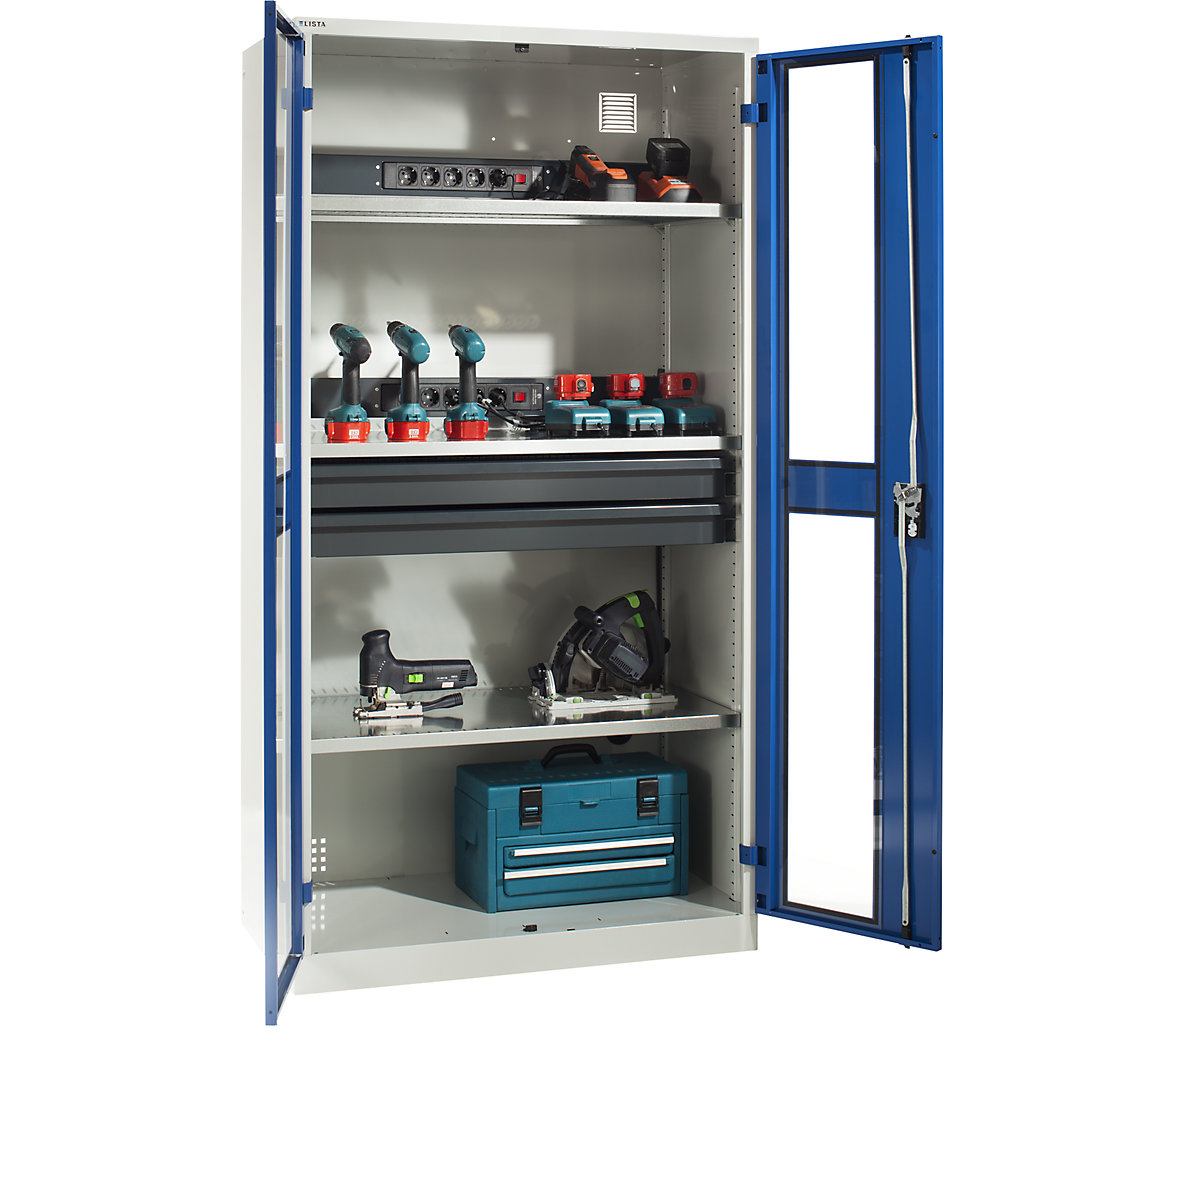 LISTA – Skříň pro nabíjení akumulátorů, 3 police, 2 zásuvky, dveře s okénkem, šedá / modrá